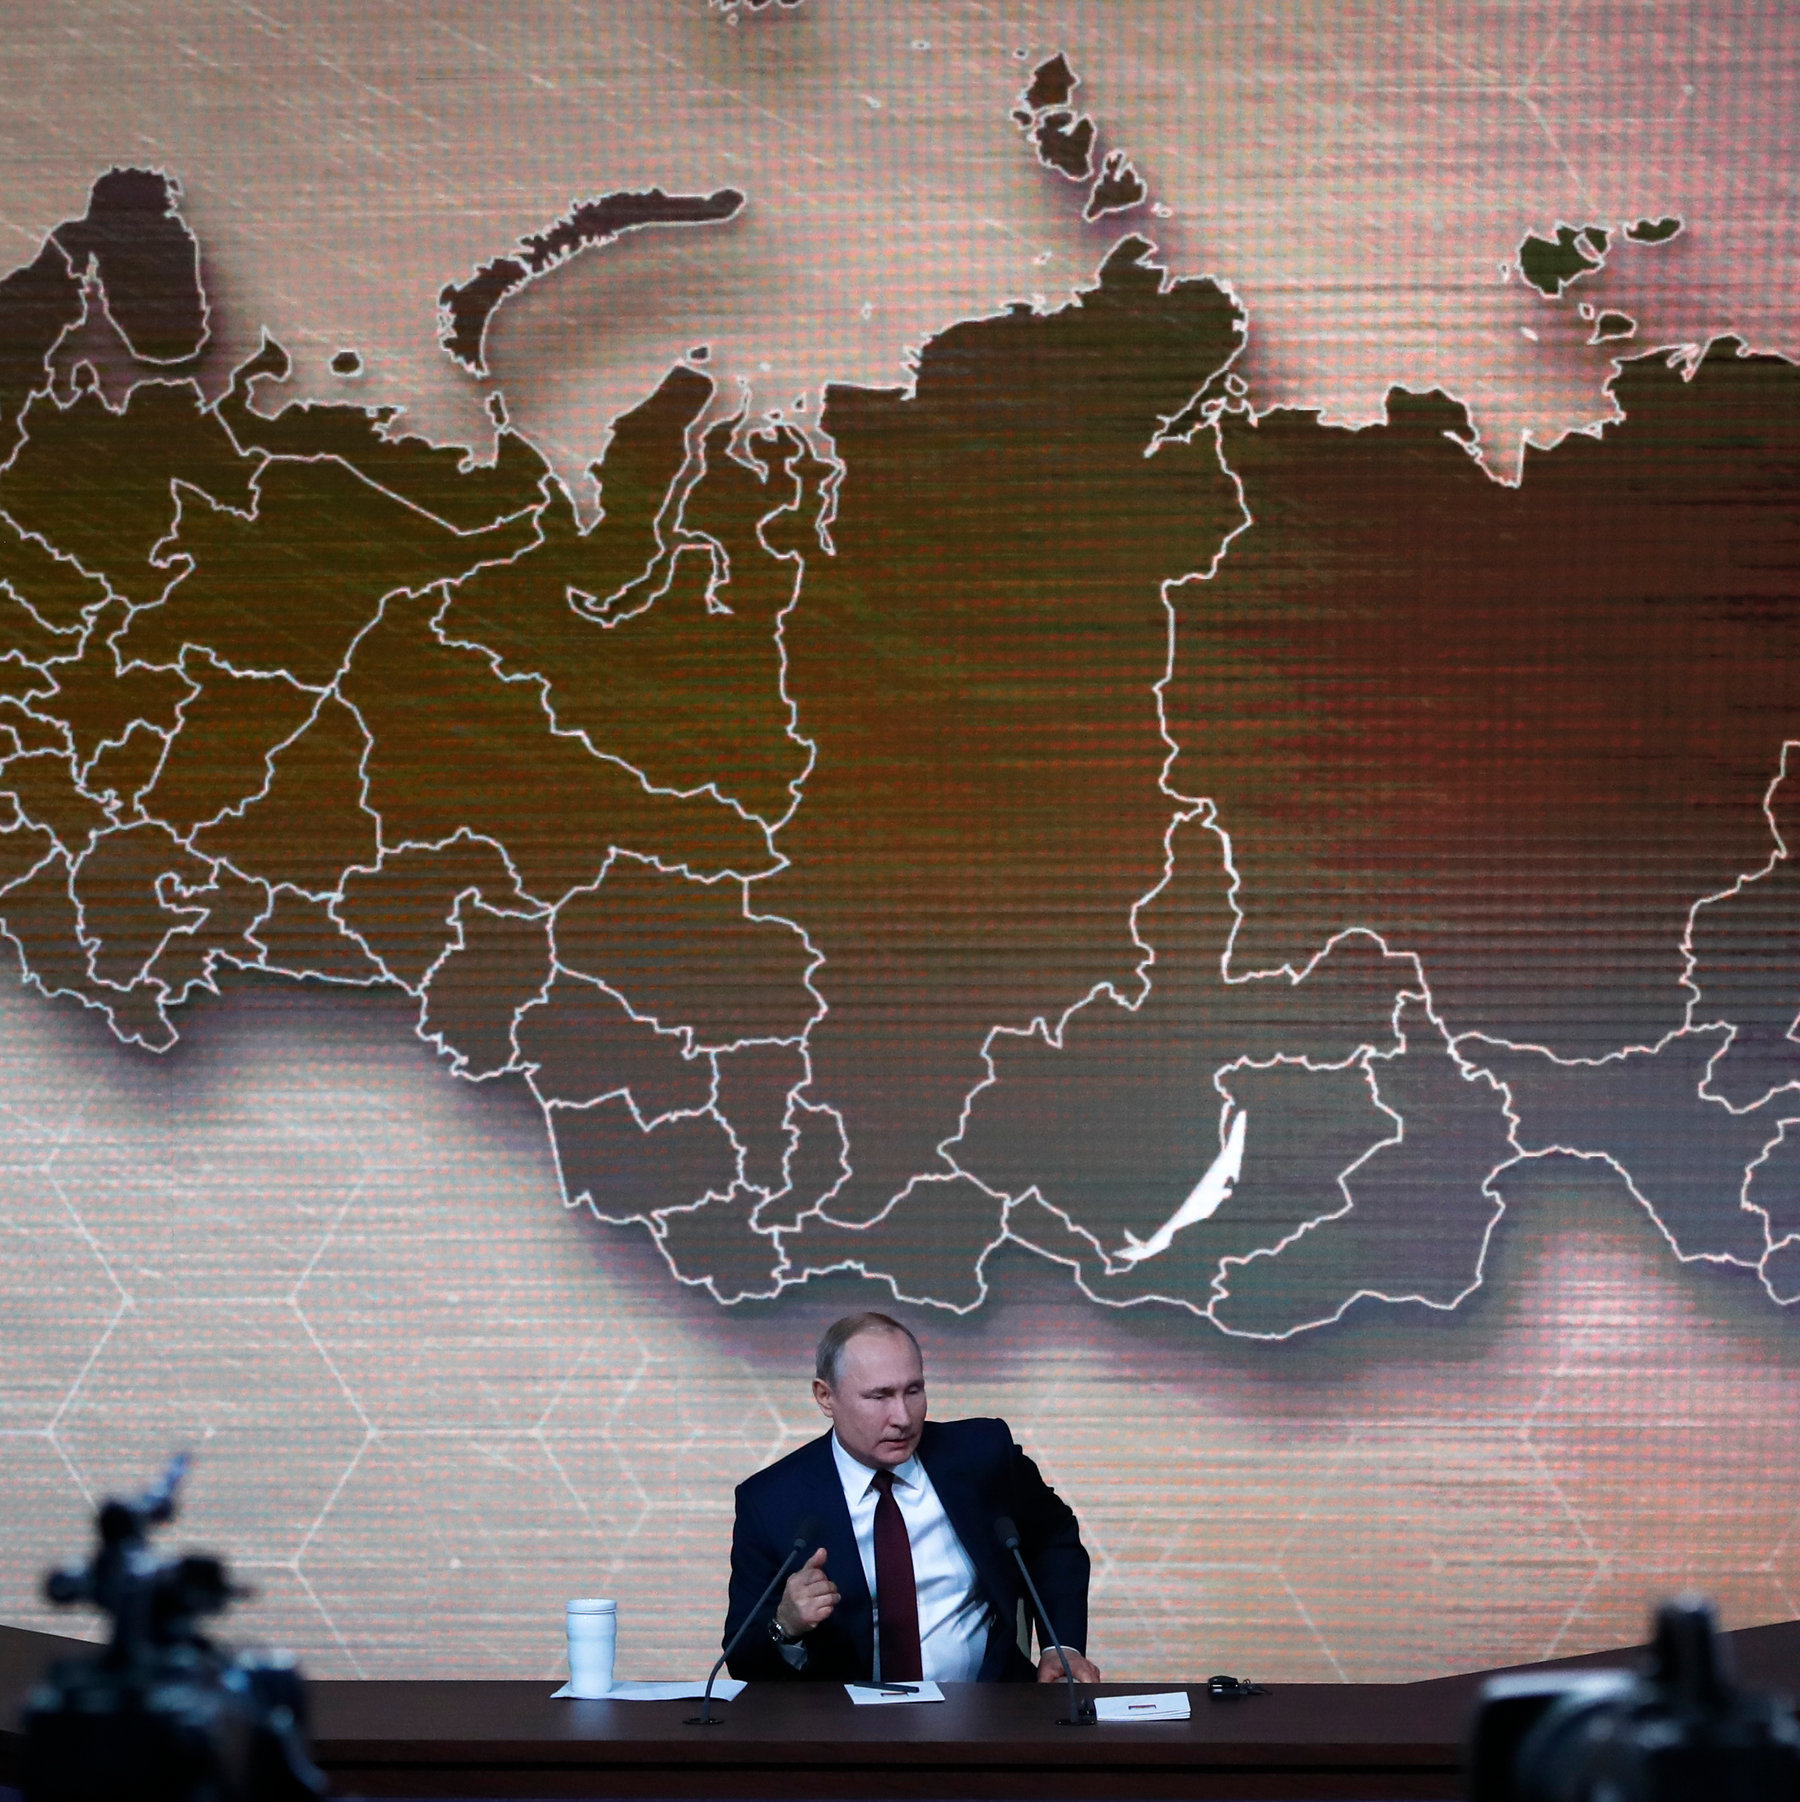 Liên minh châu Âu muốn áp đặt lệnh cấm vận dầu mỏ của Nga trong vòng trừng phạt mới nhất nhắm vào Moscow, nước hiện đang tìm cách bán nhiều hơn cho những nước tương tự như Trung Quốc. Ảnh: @AFP.